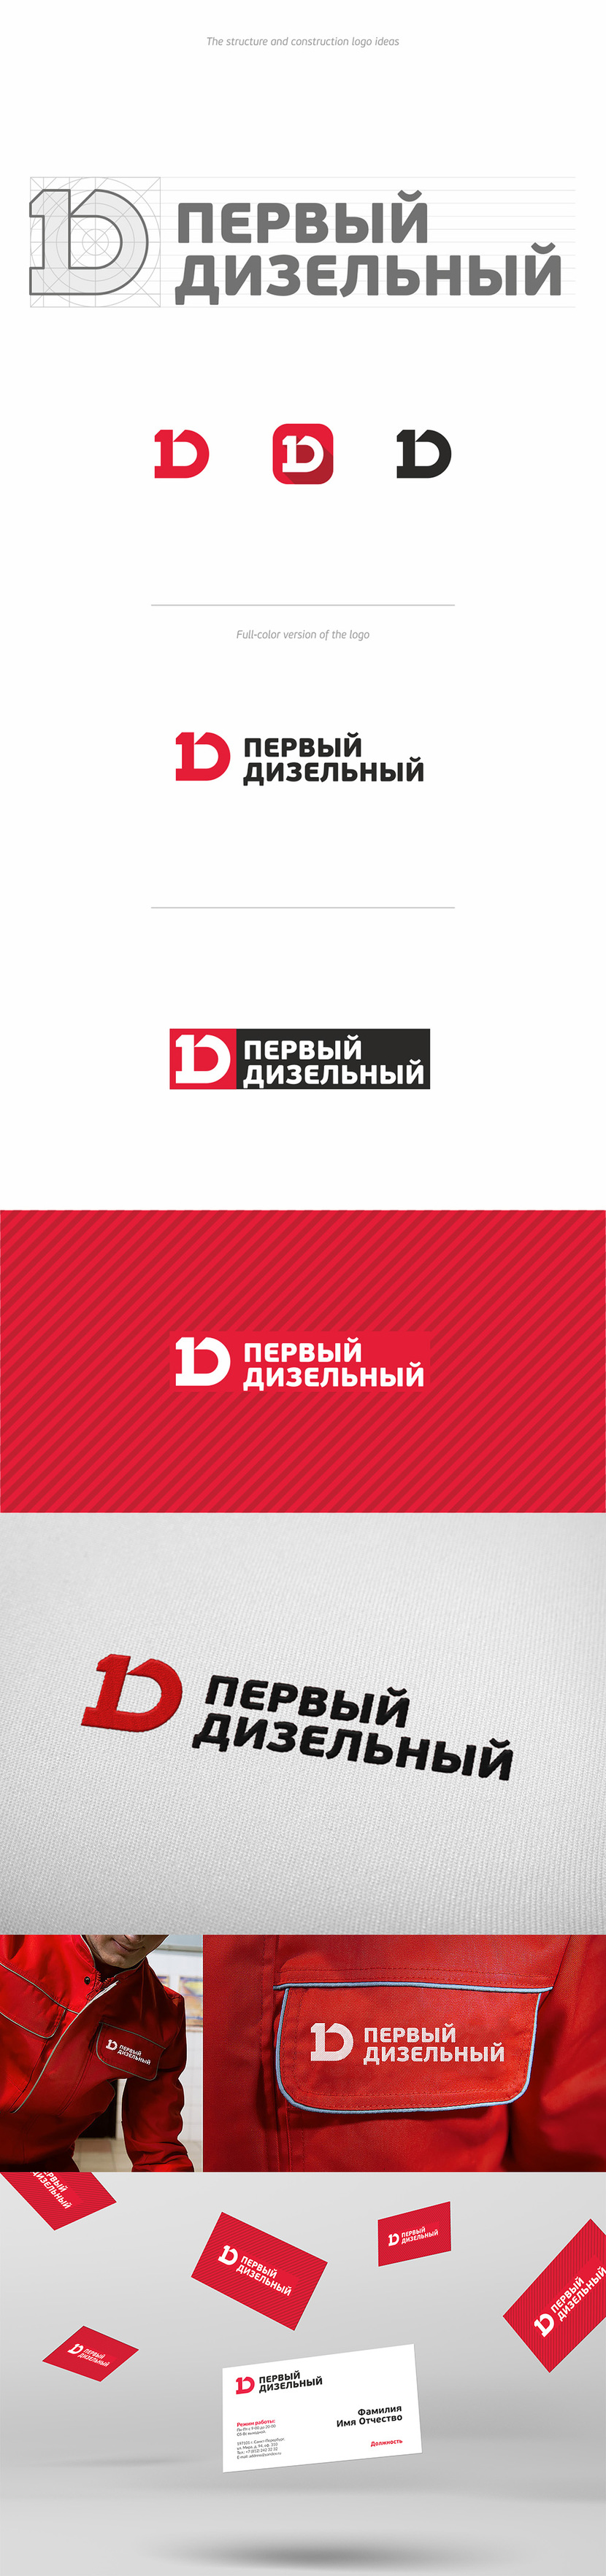 Фирменный стиль и логотип для сети автосервисов